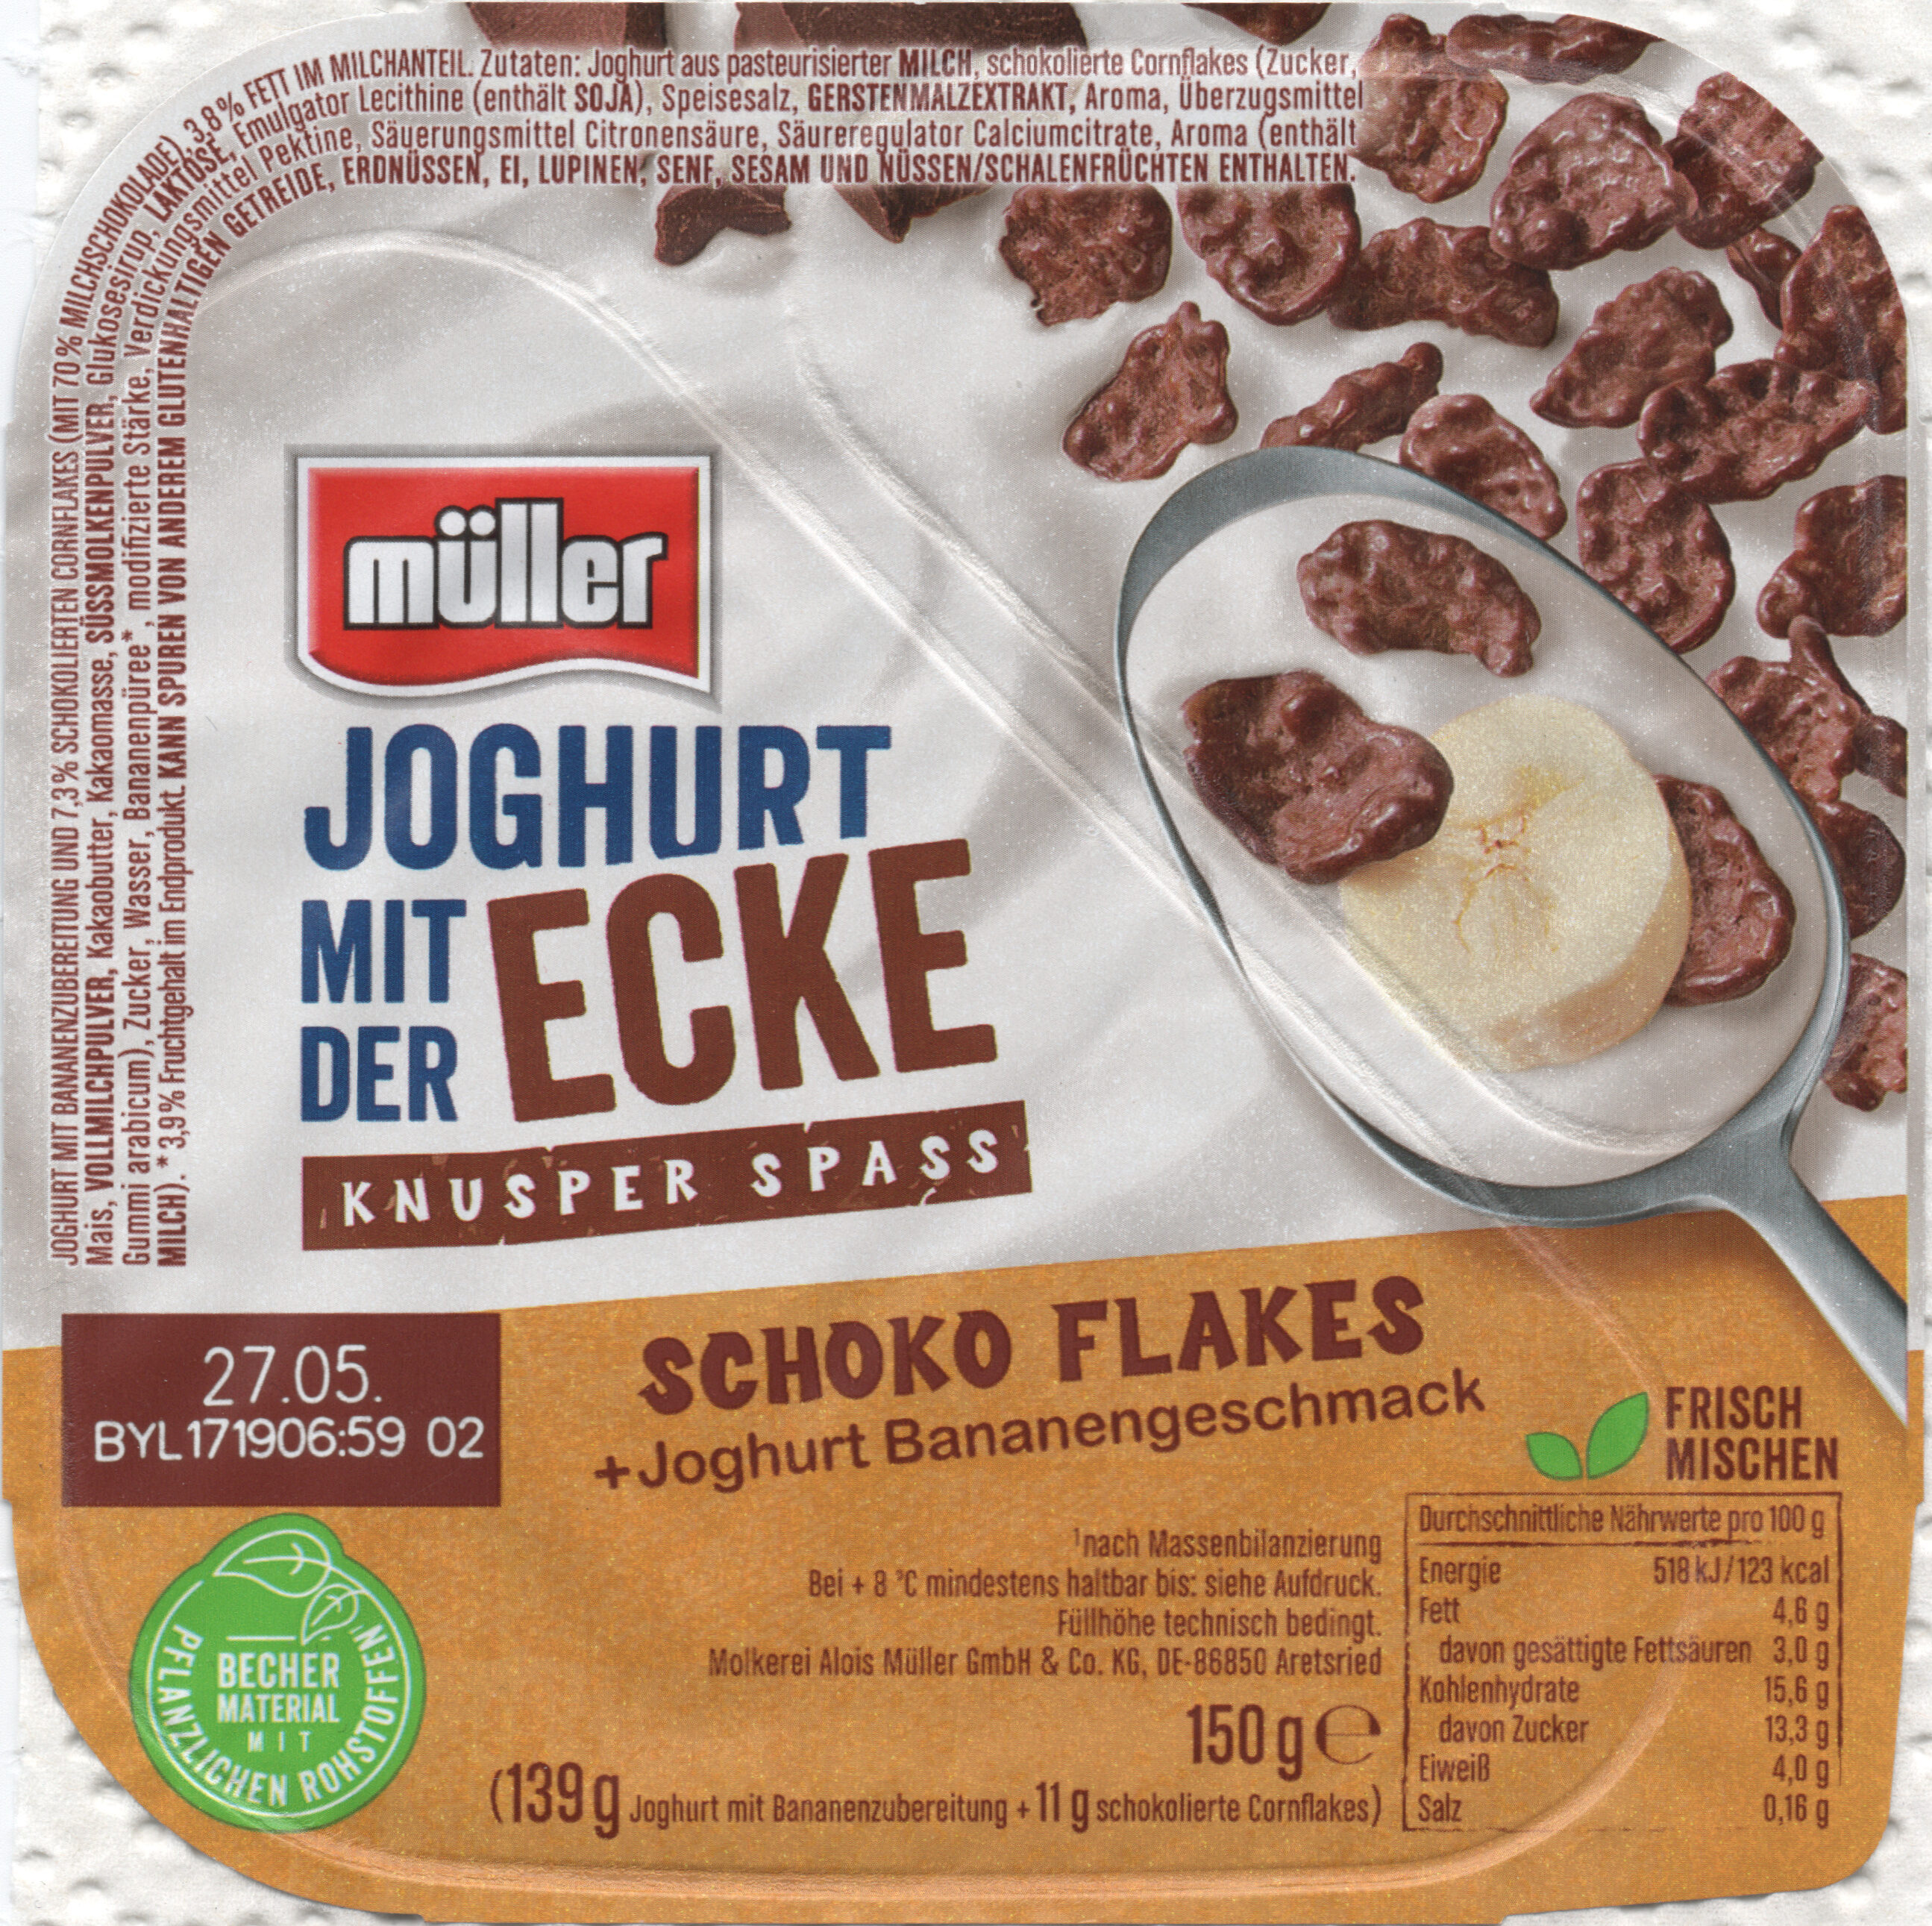 Joghurt mit der Ecke: Schoko Flakes - Product - de